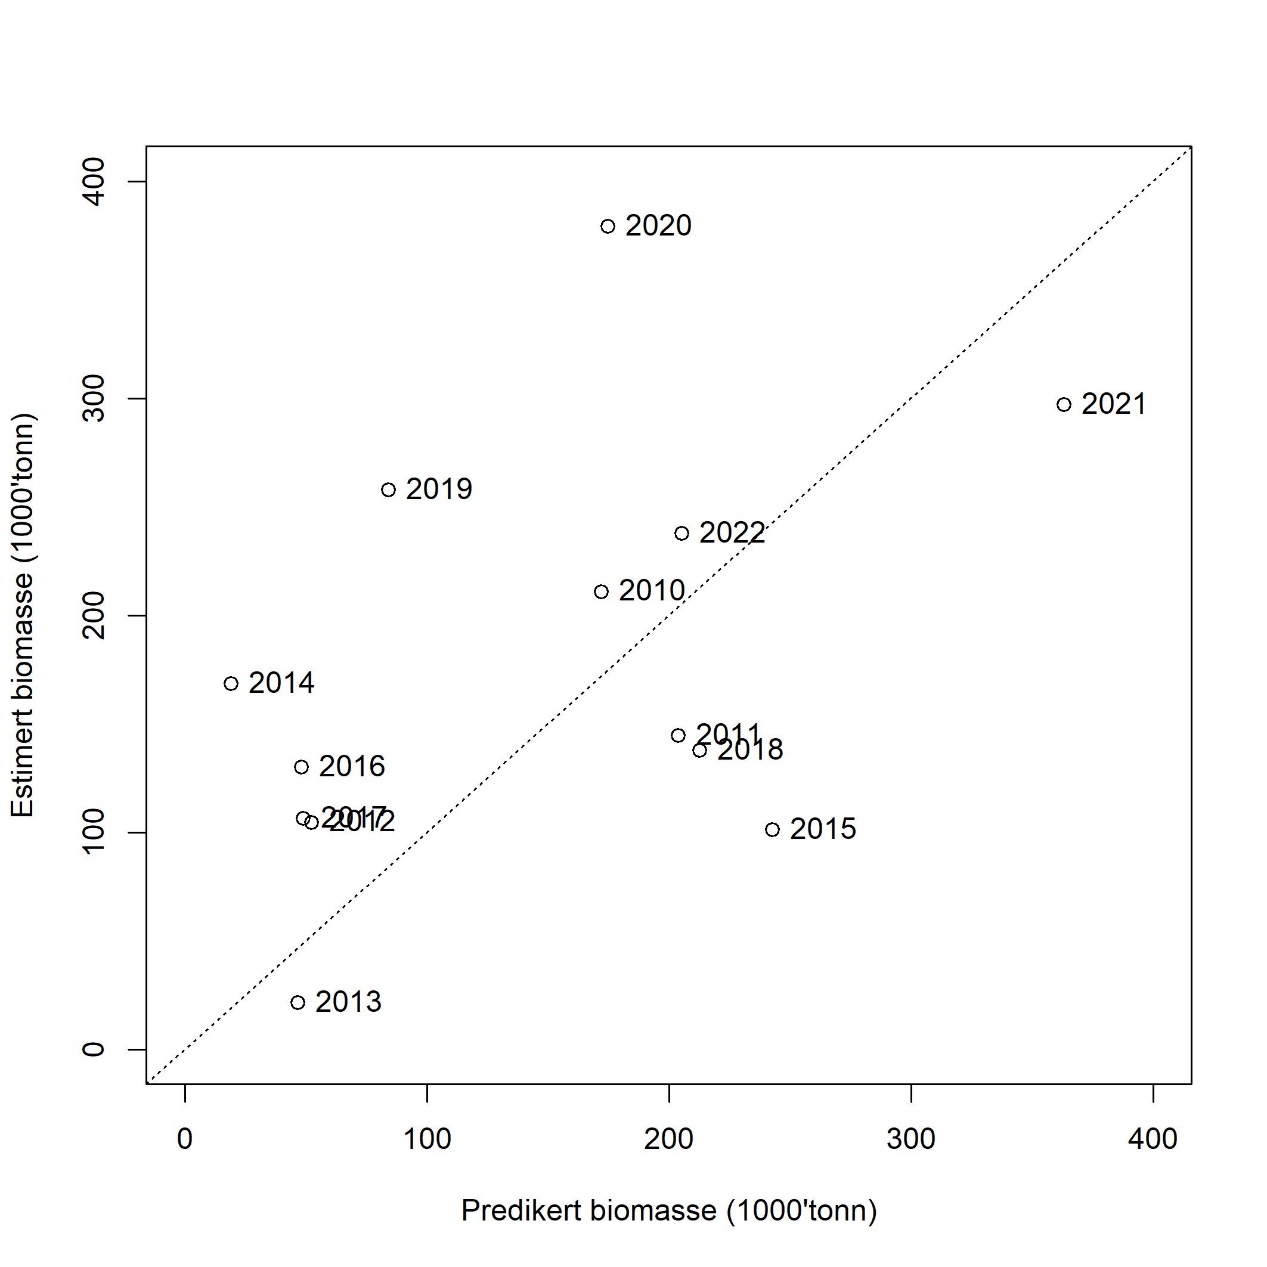 Predikert biomasse versus estimert biomasse av 2 år og eldre tobis i det akustiske toktet i mai per år. Den stiplede linjen viser kurven der predikert og estimert biomasse er lik. Årstallene viser til toktår (da biomassen ble estimert).